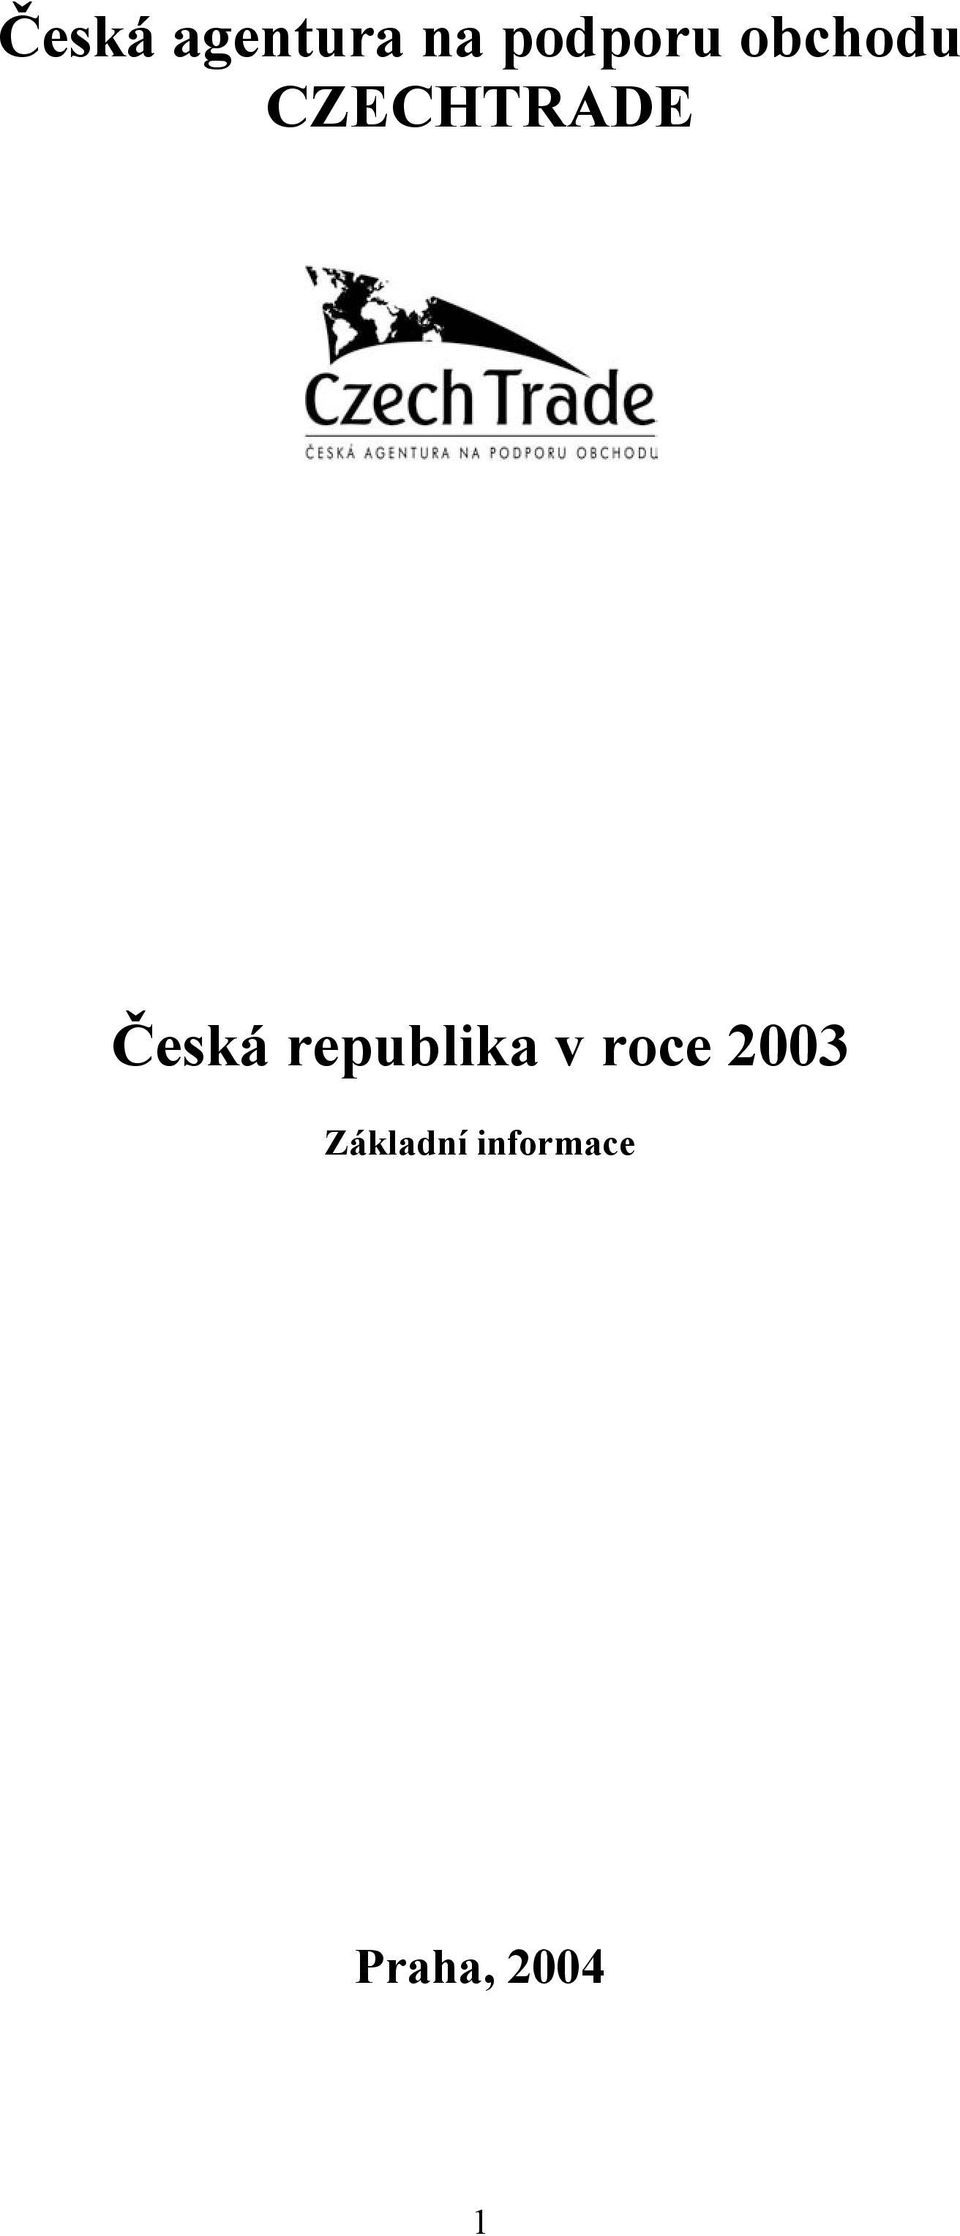 republika v roce 2003